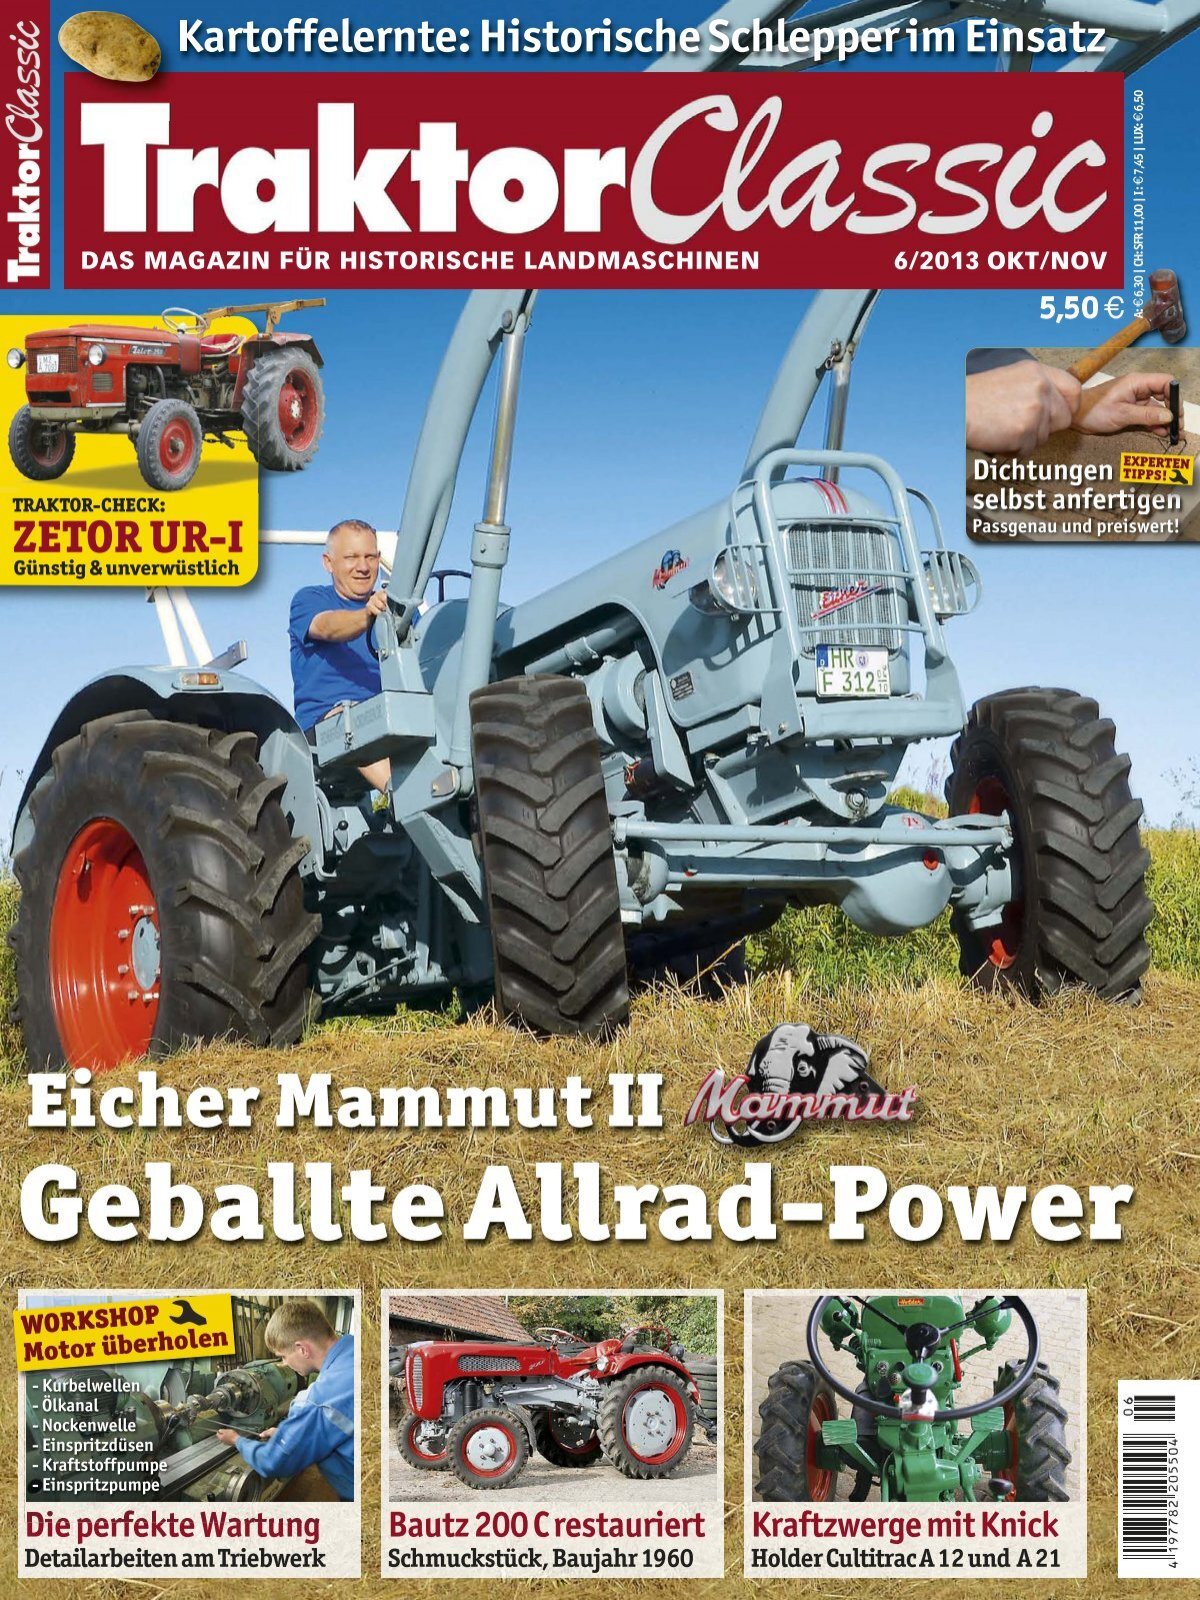 Suche Blinkerschalter Traktor Schlepper Fendt Eicher in Bayern